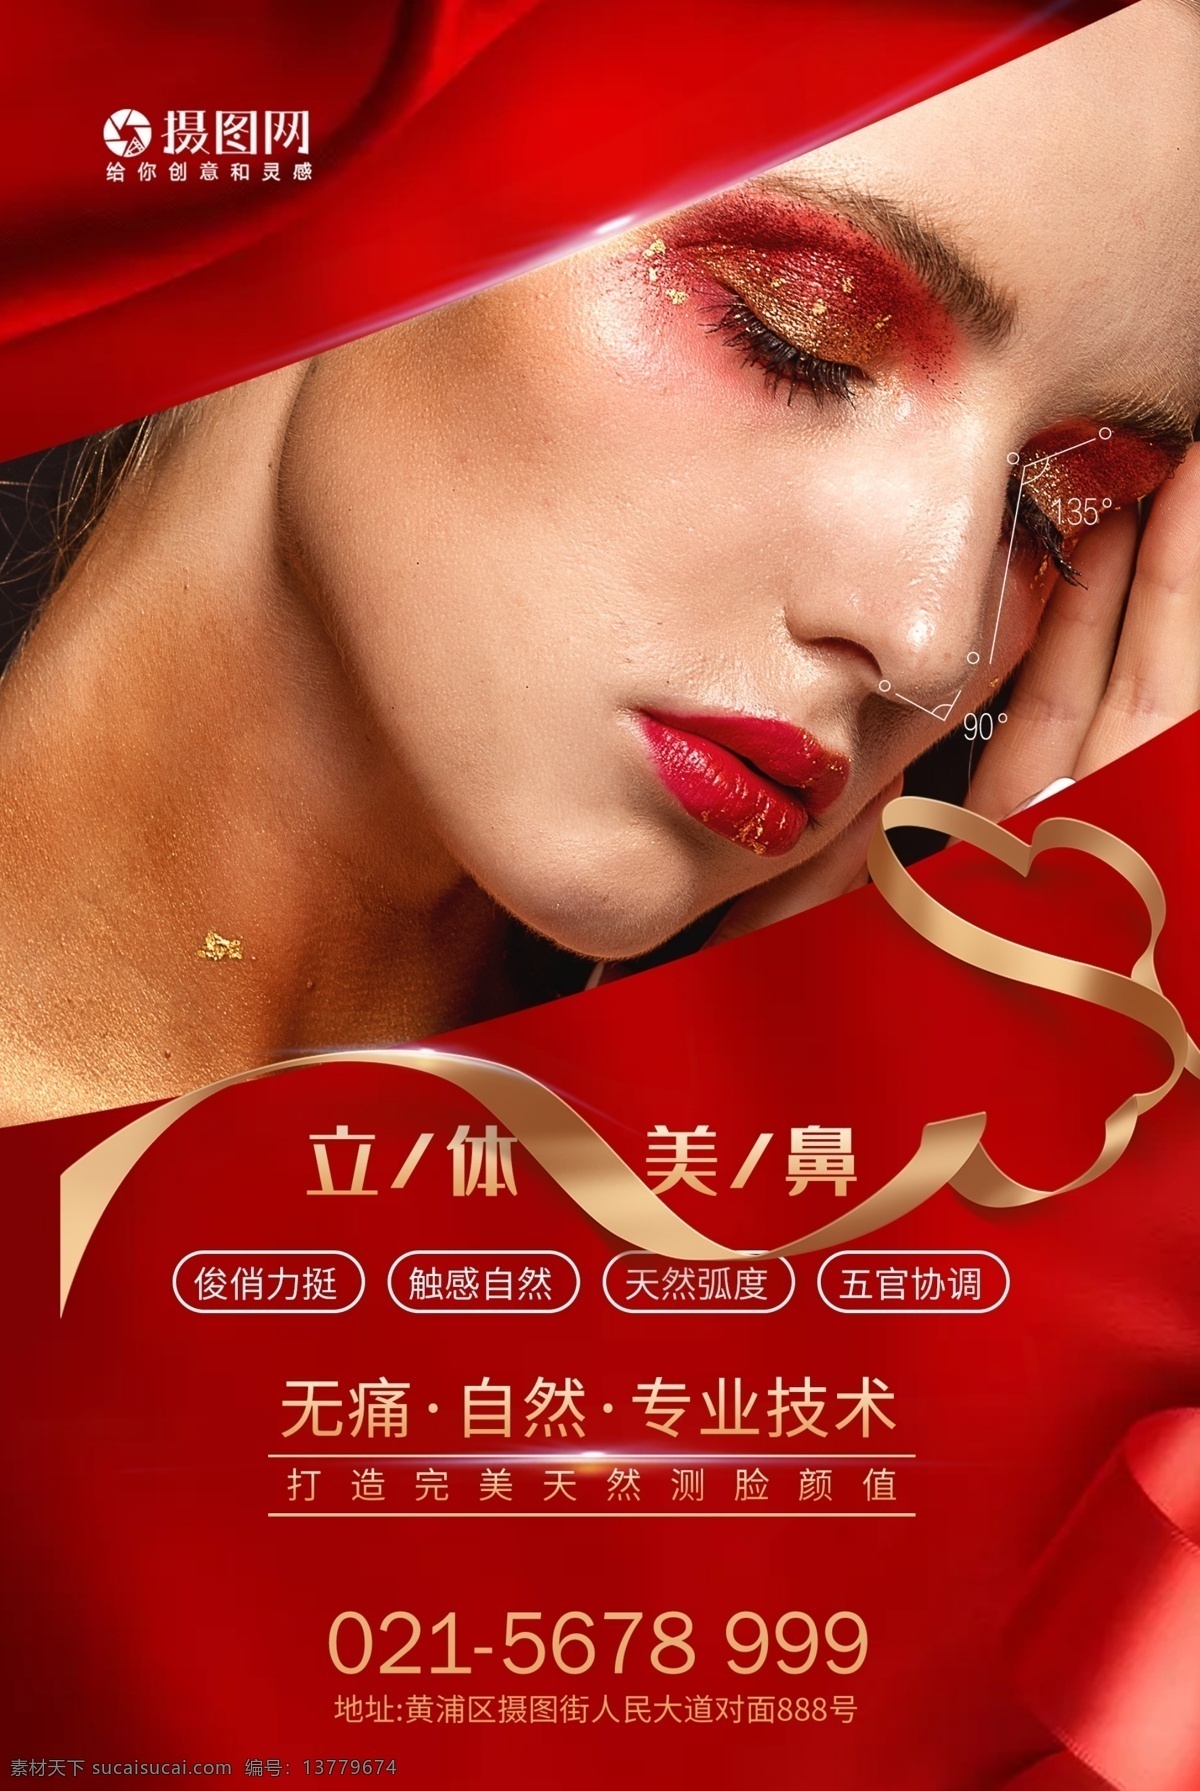 美鼻 隆鼻 医疗 整形 海报 红色 欧美 技术 侧脸 女性 模特 鼻子 半永久 整容 美容 手术 整形海报 美容海报